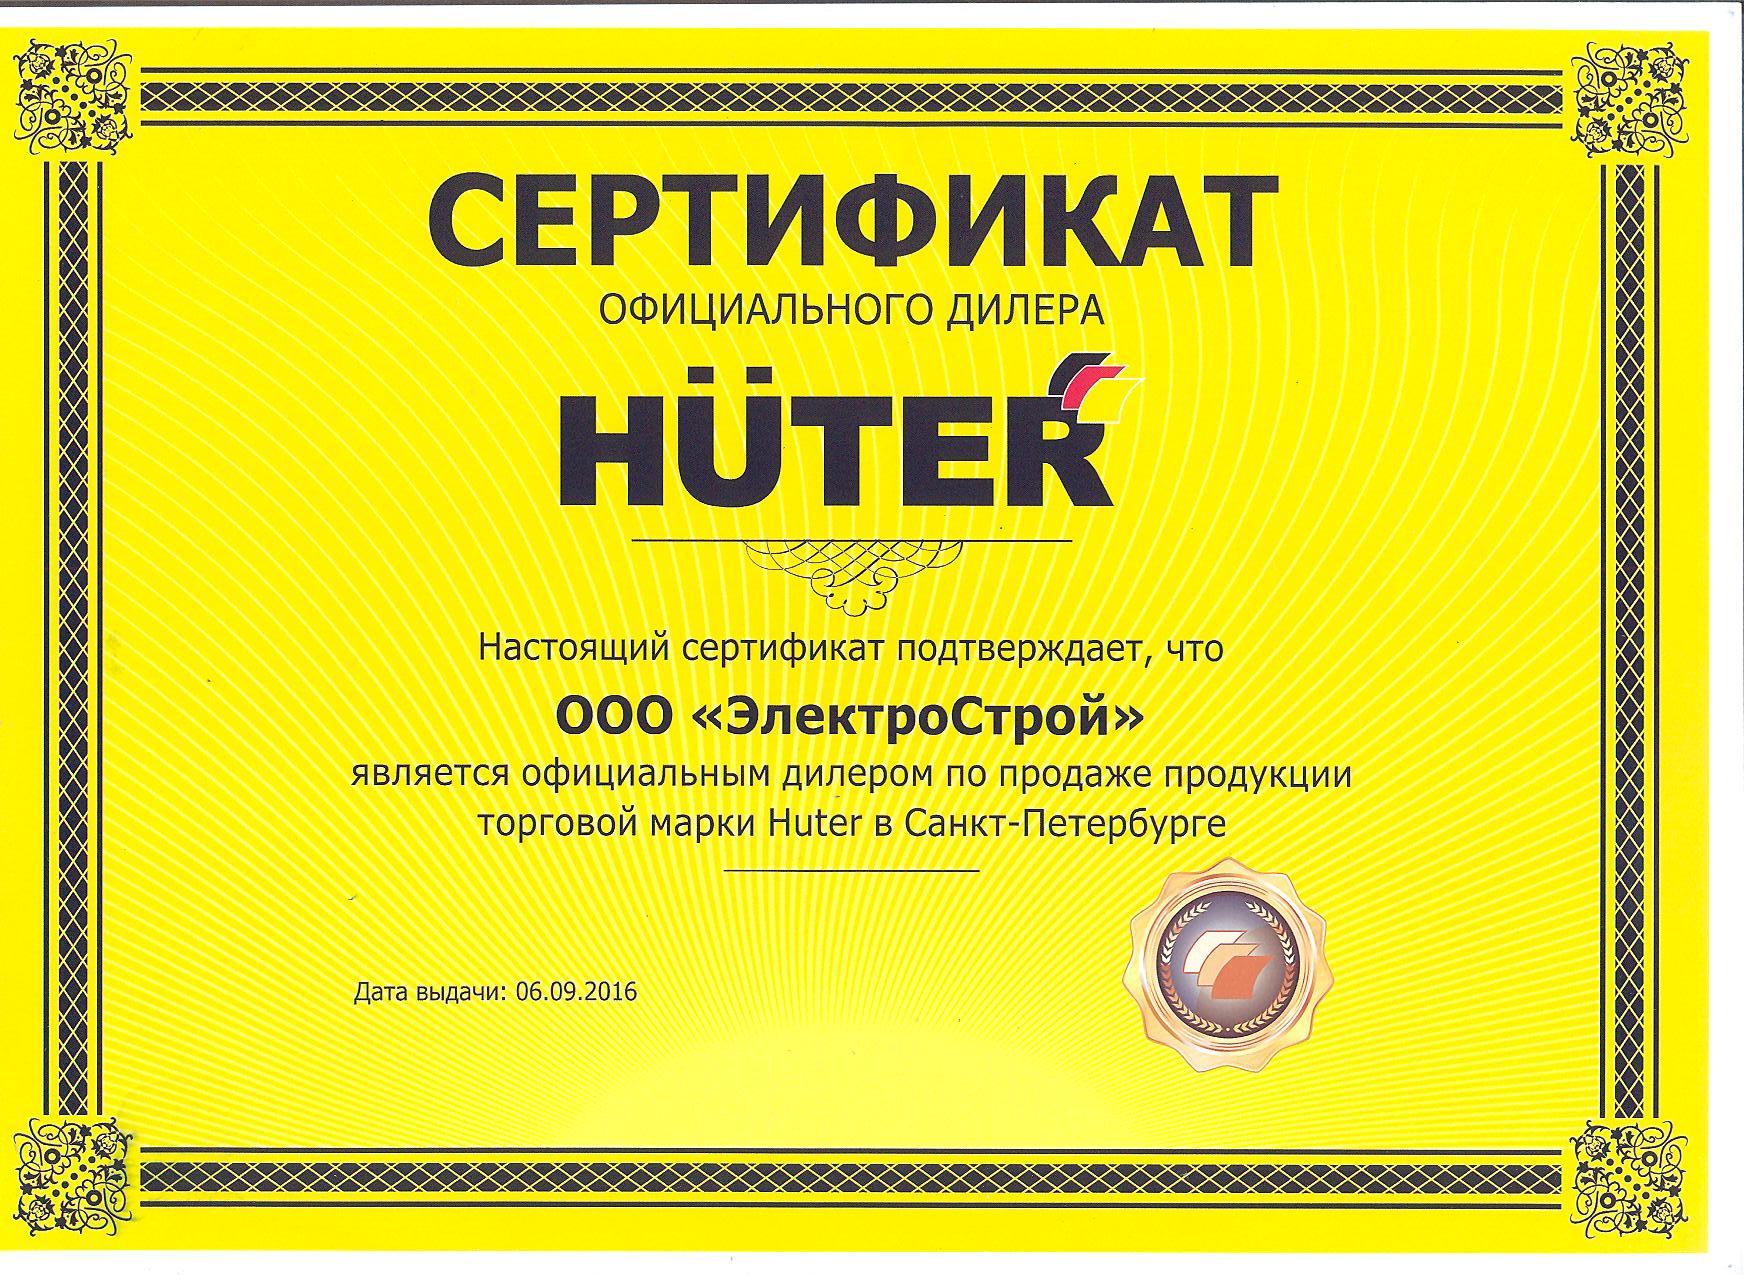 Сертификат Huter